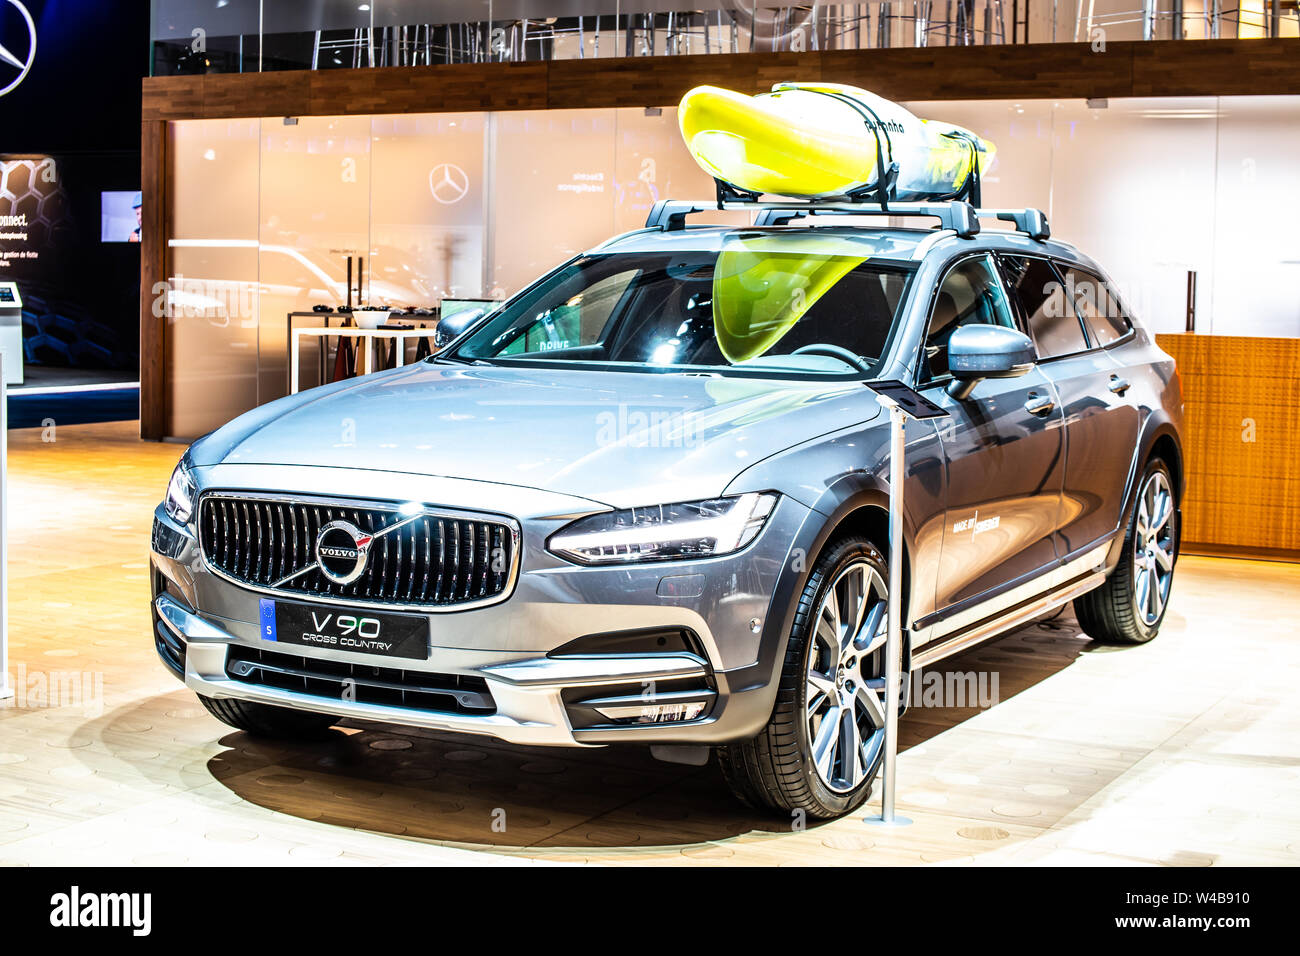 Bruxelles, Jan 2019 : Volvo V90 Cross Country station wagon, de l'Automobile de Bruxelles, SPA, la plate-forme immobilier exécutif fabriqué par le suédois Volvo Cars Banque D'Images